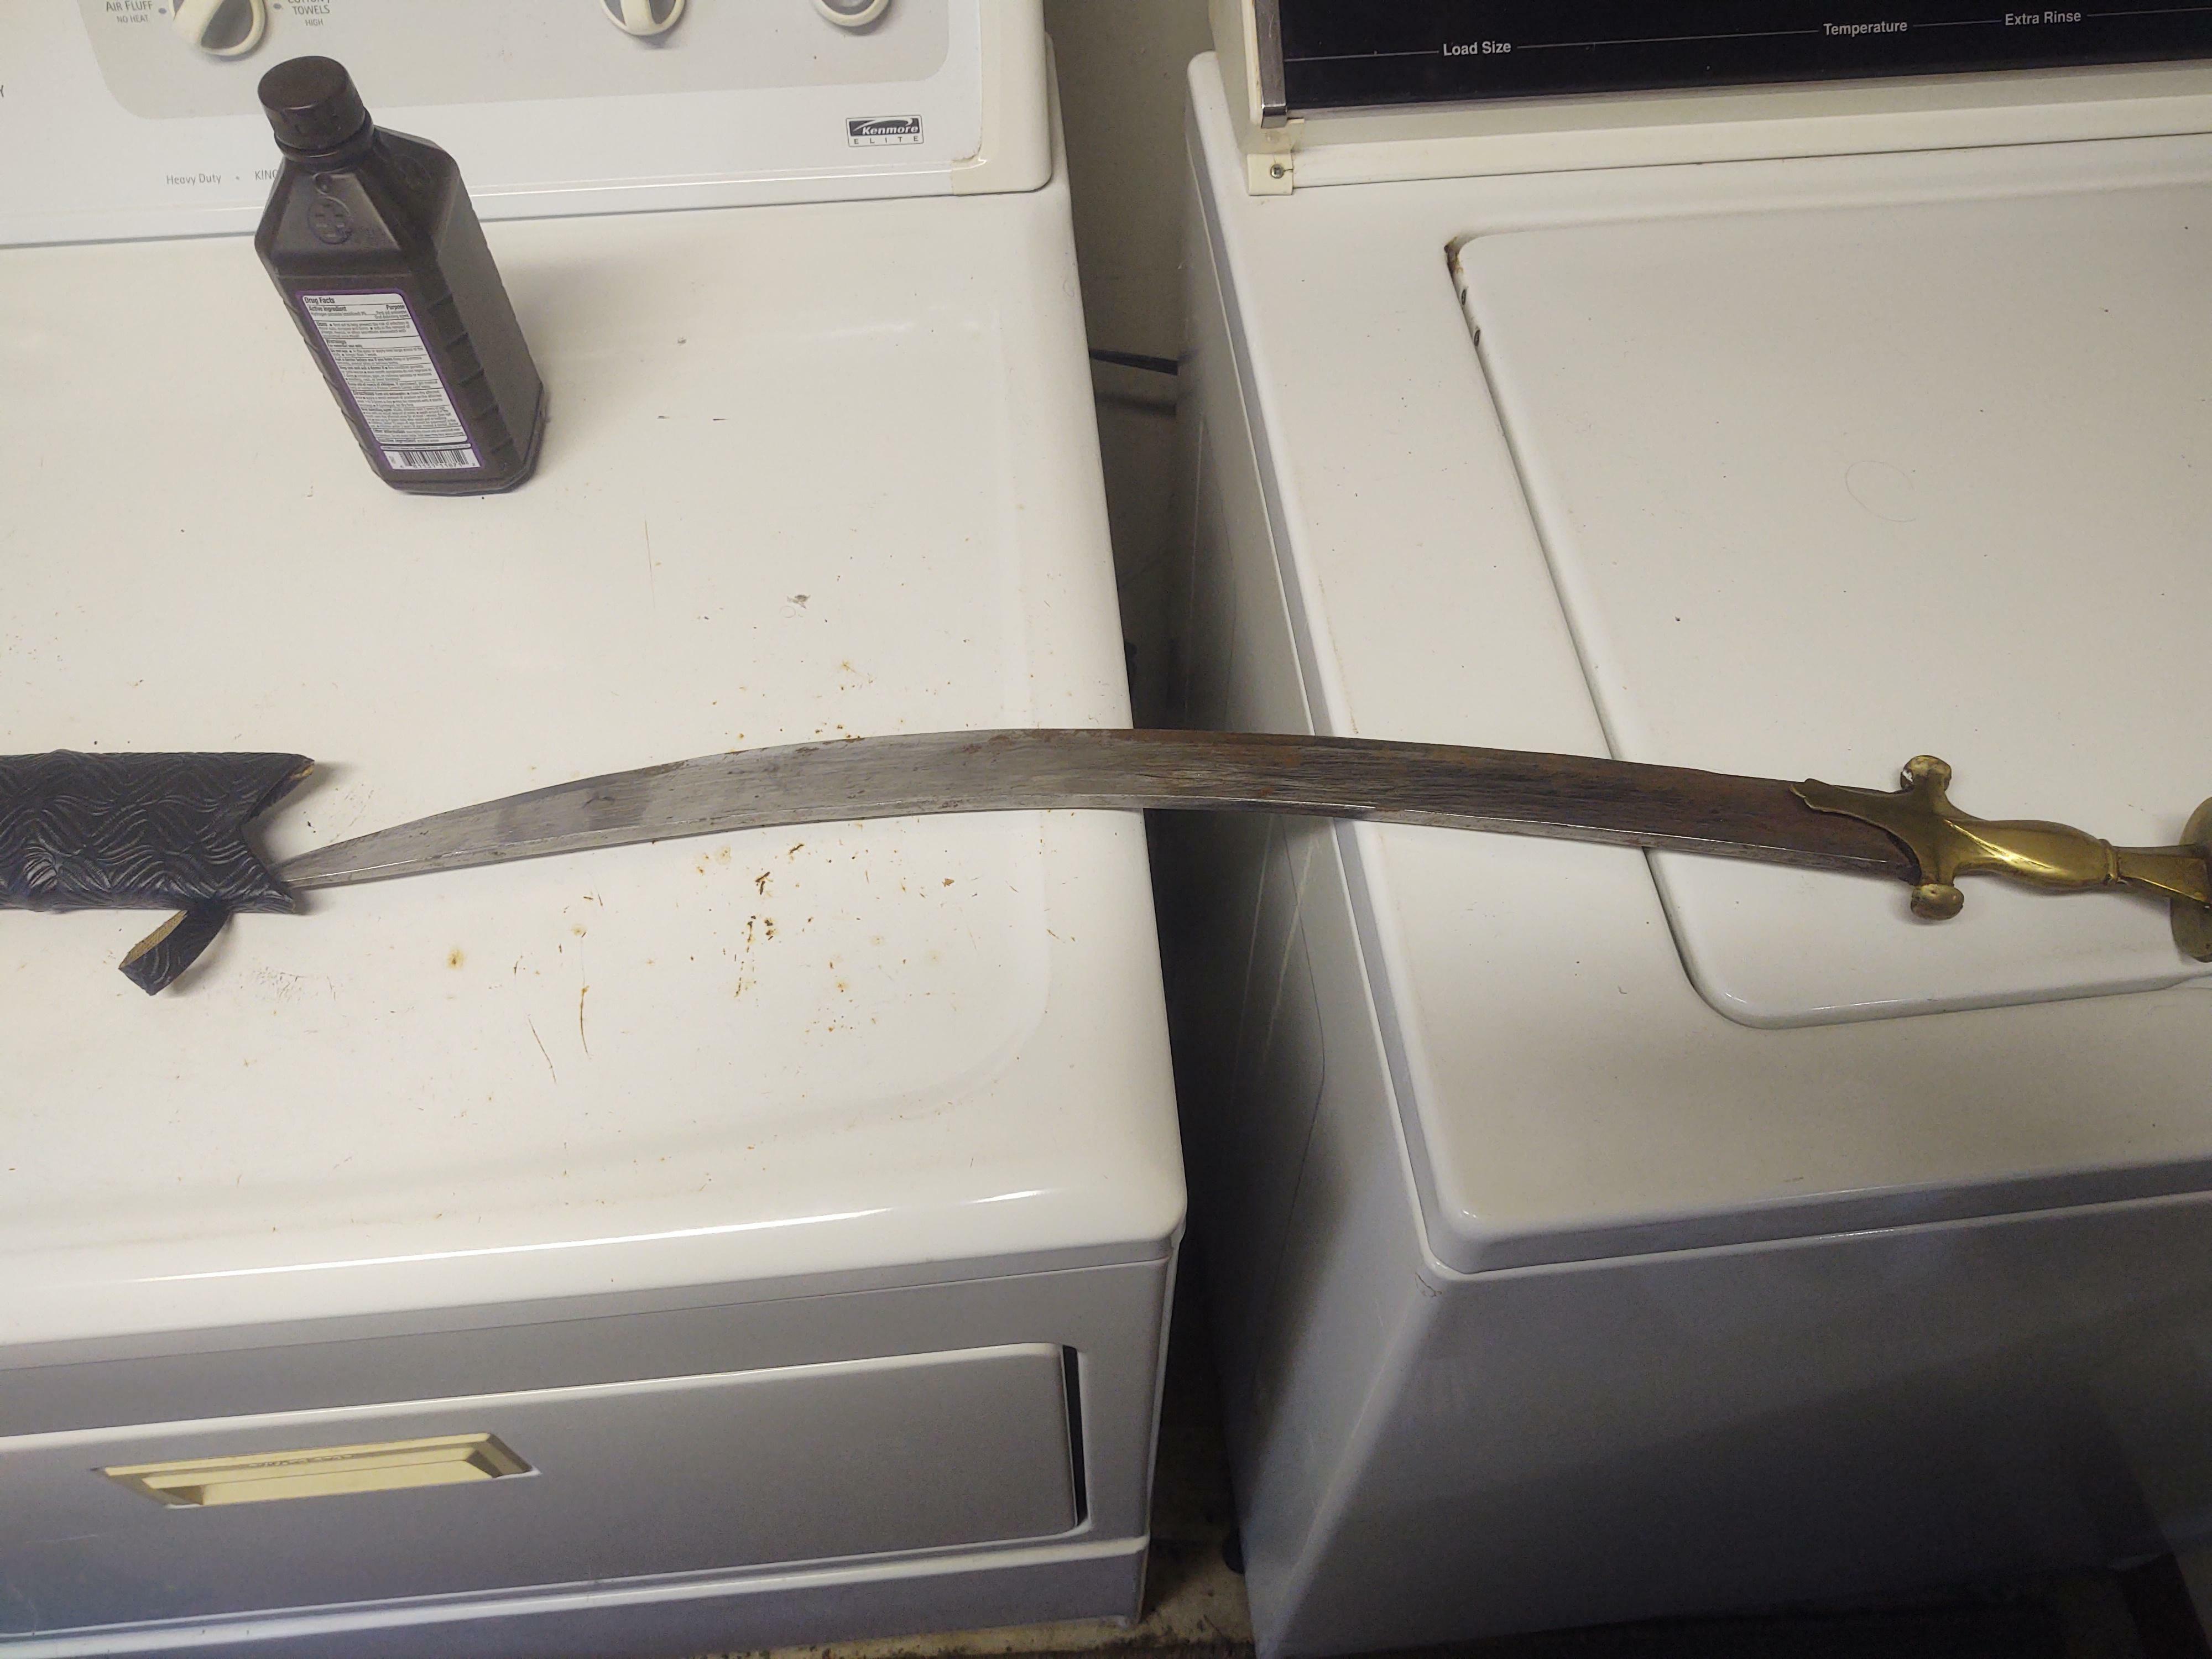 J'ai trouvé une épée sur une haute étagère dans ma nouvelle maison.